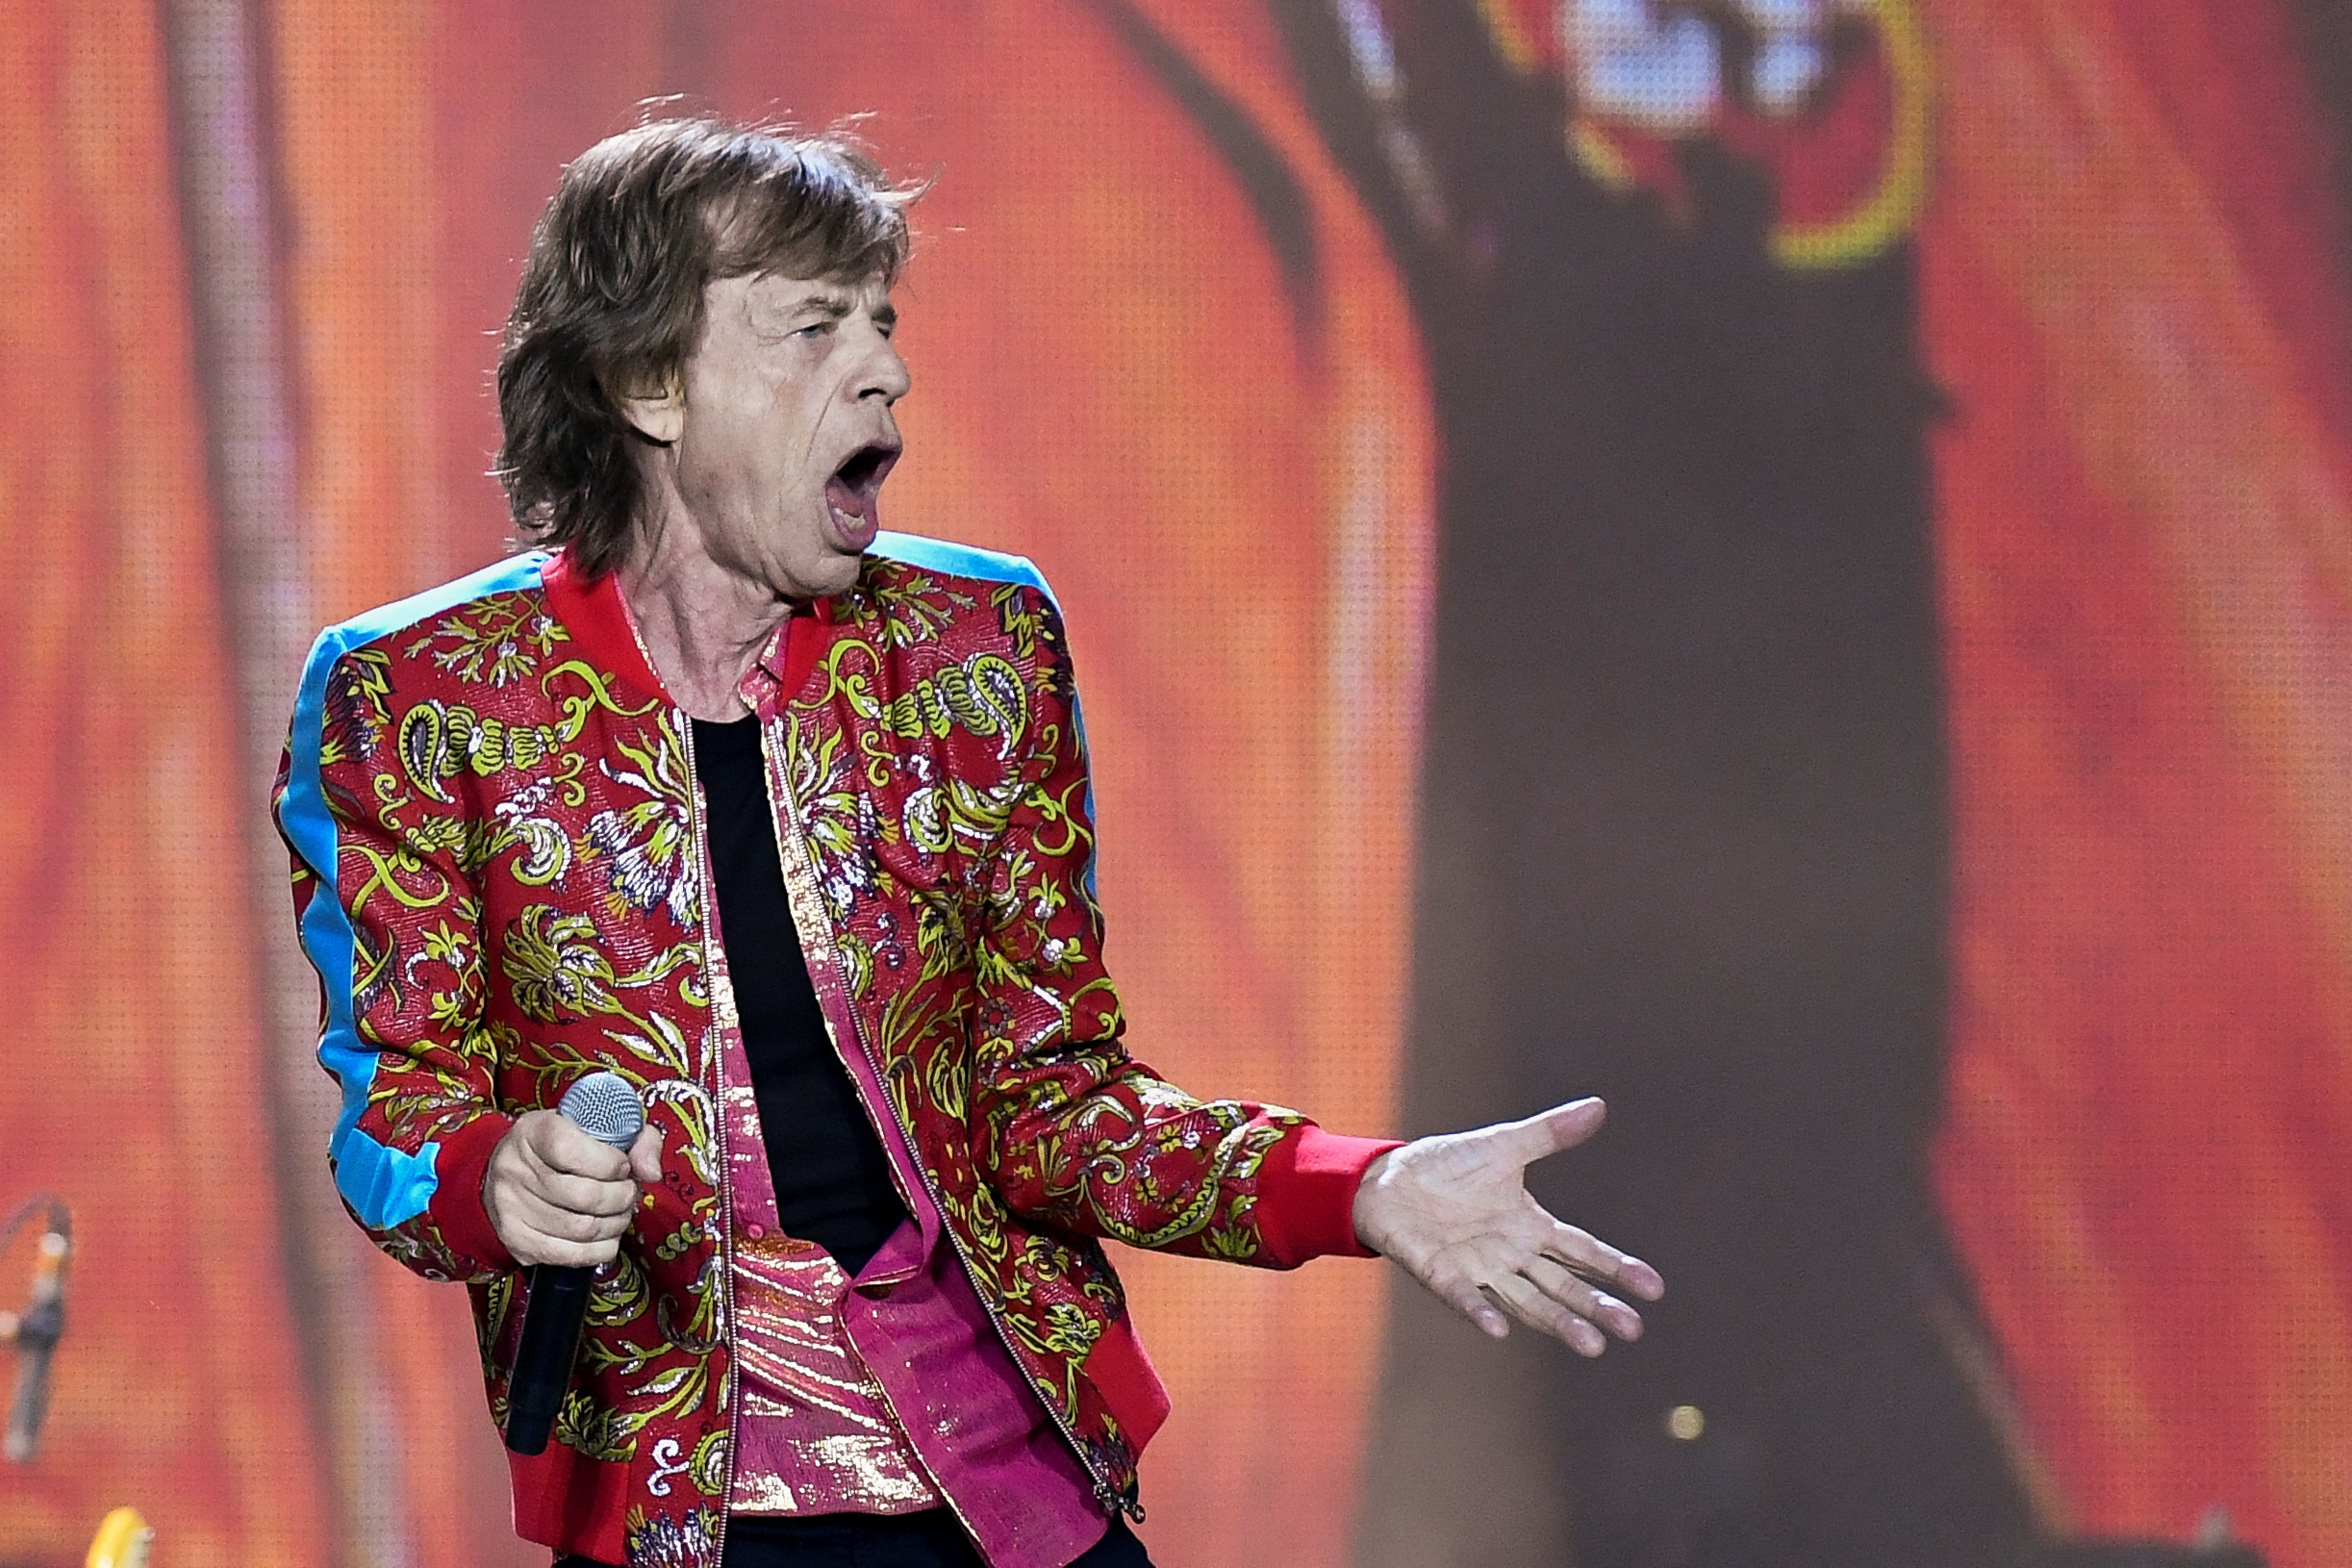 Mick Jagger de The Rolling Stones se presenta como parte de su gira "Stones Sixty Europe 2022", en Ámsterdam, Países Bajos, julio 7, 2022. REUTERS/Piroschka Van de Wouw